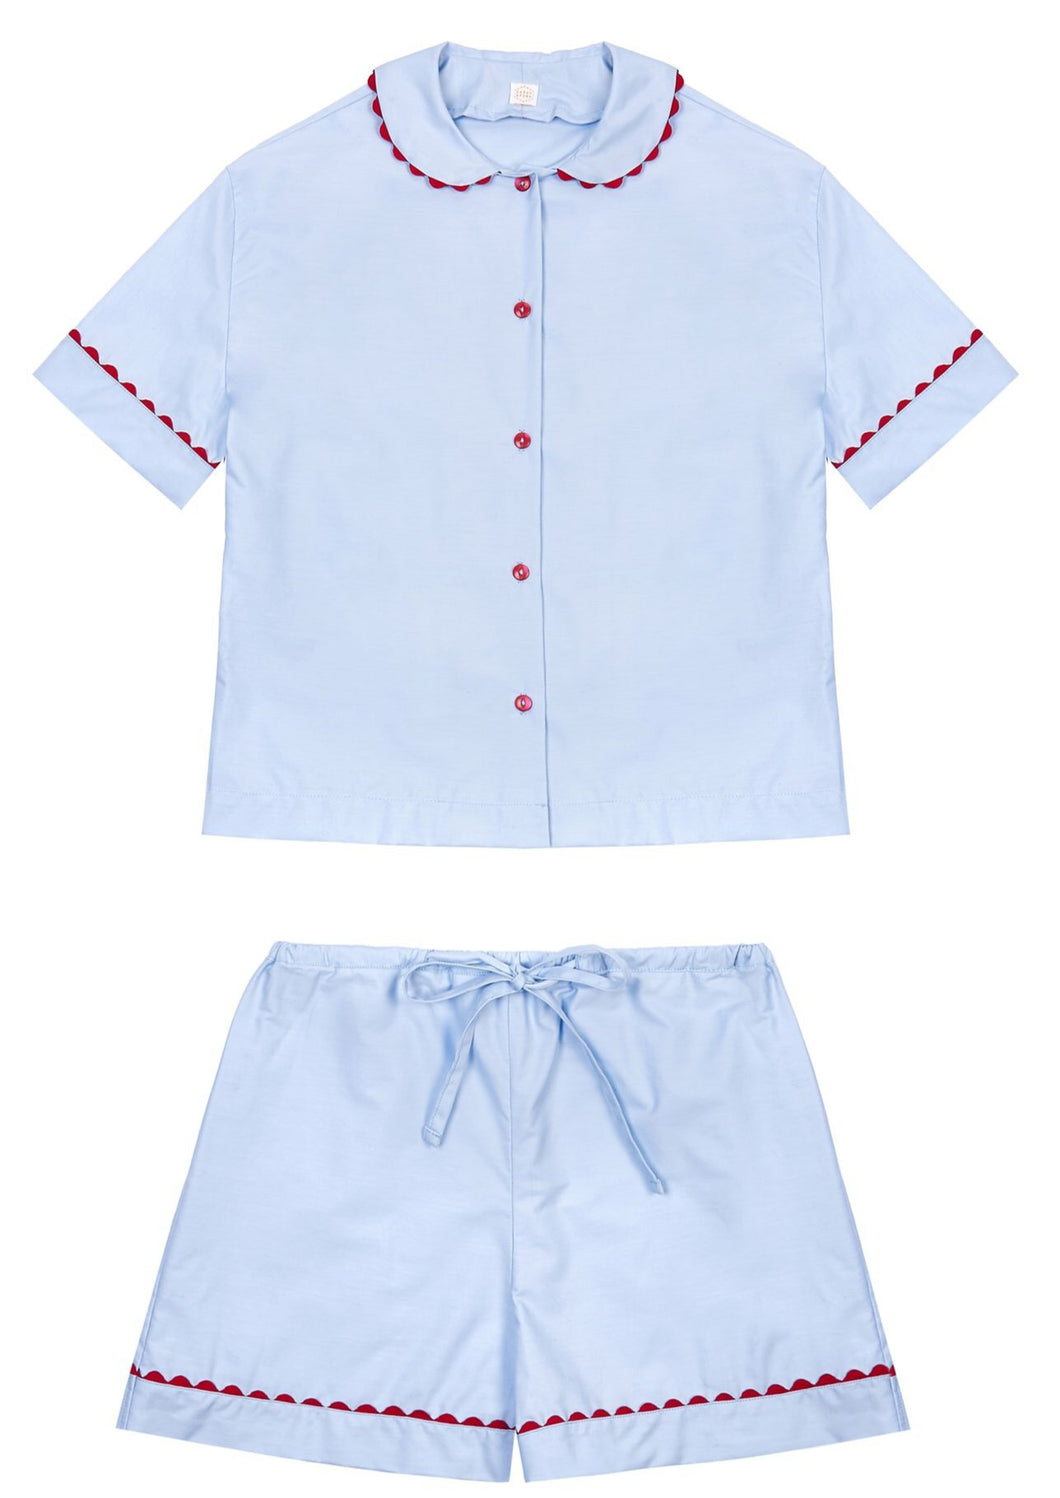 100% Cotton Poplin Blue Pyjamas with Red Ric Rac Trim